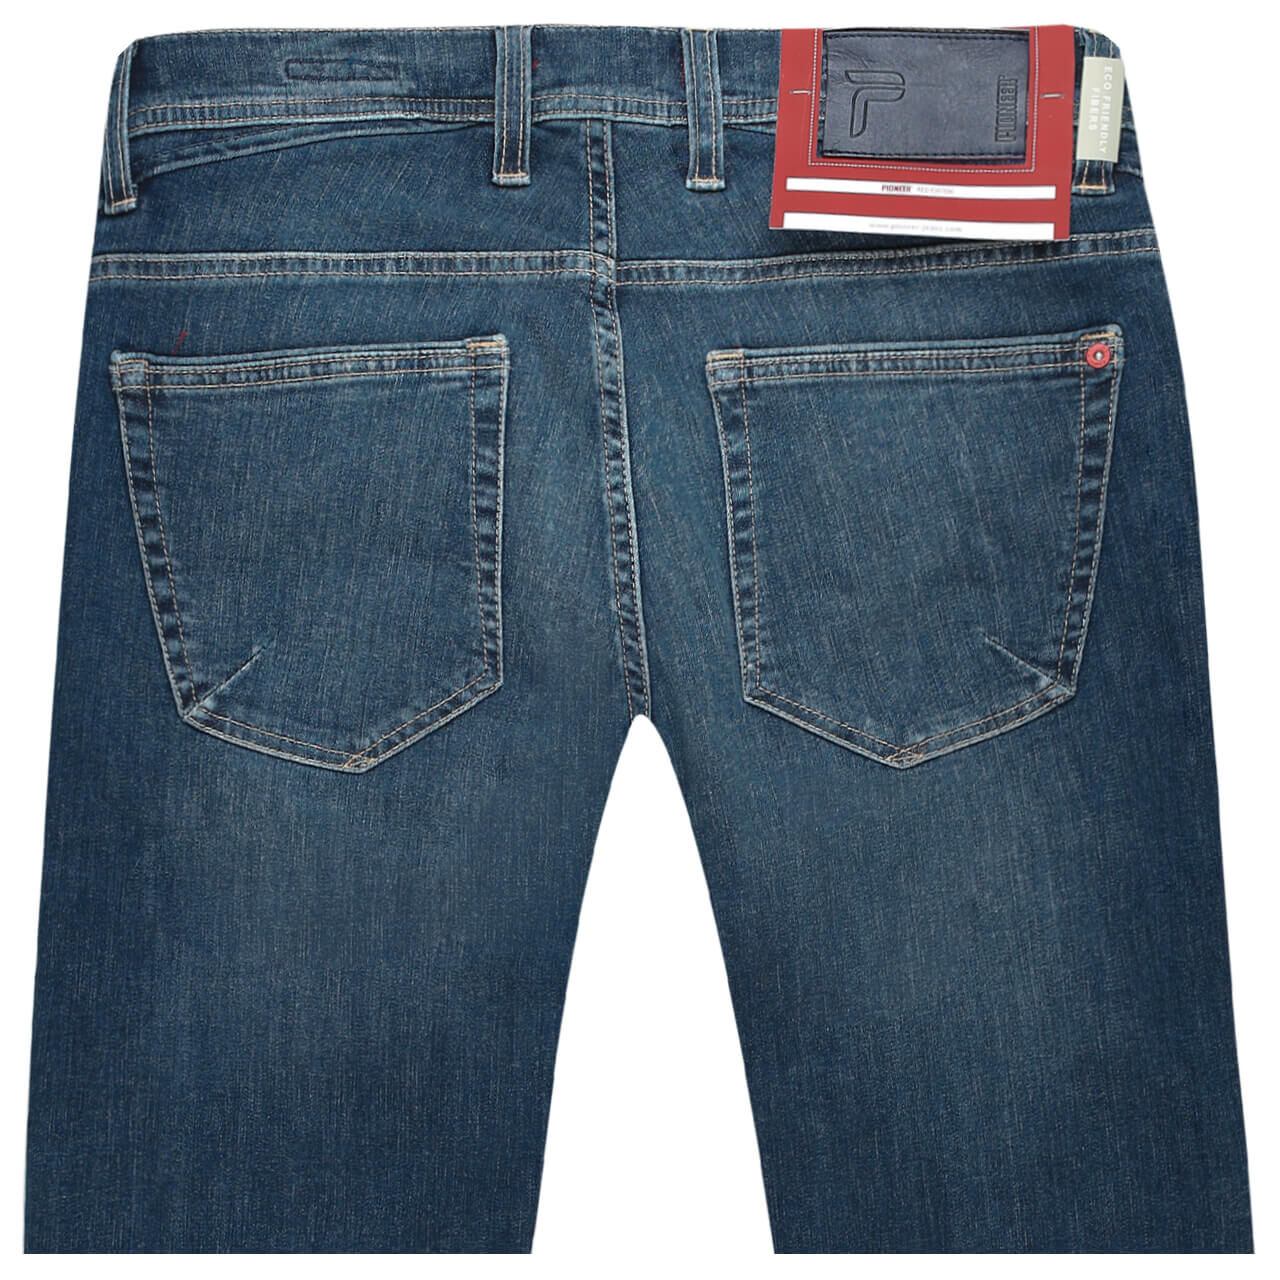 Pioneer Jeans Ryan für Herren in Blau verwaschen, FarbNr.: 6834